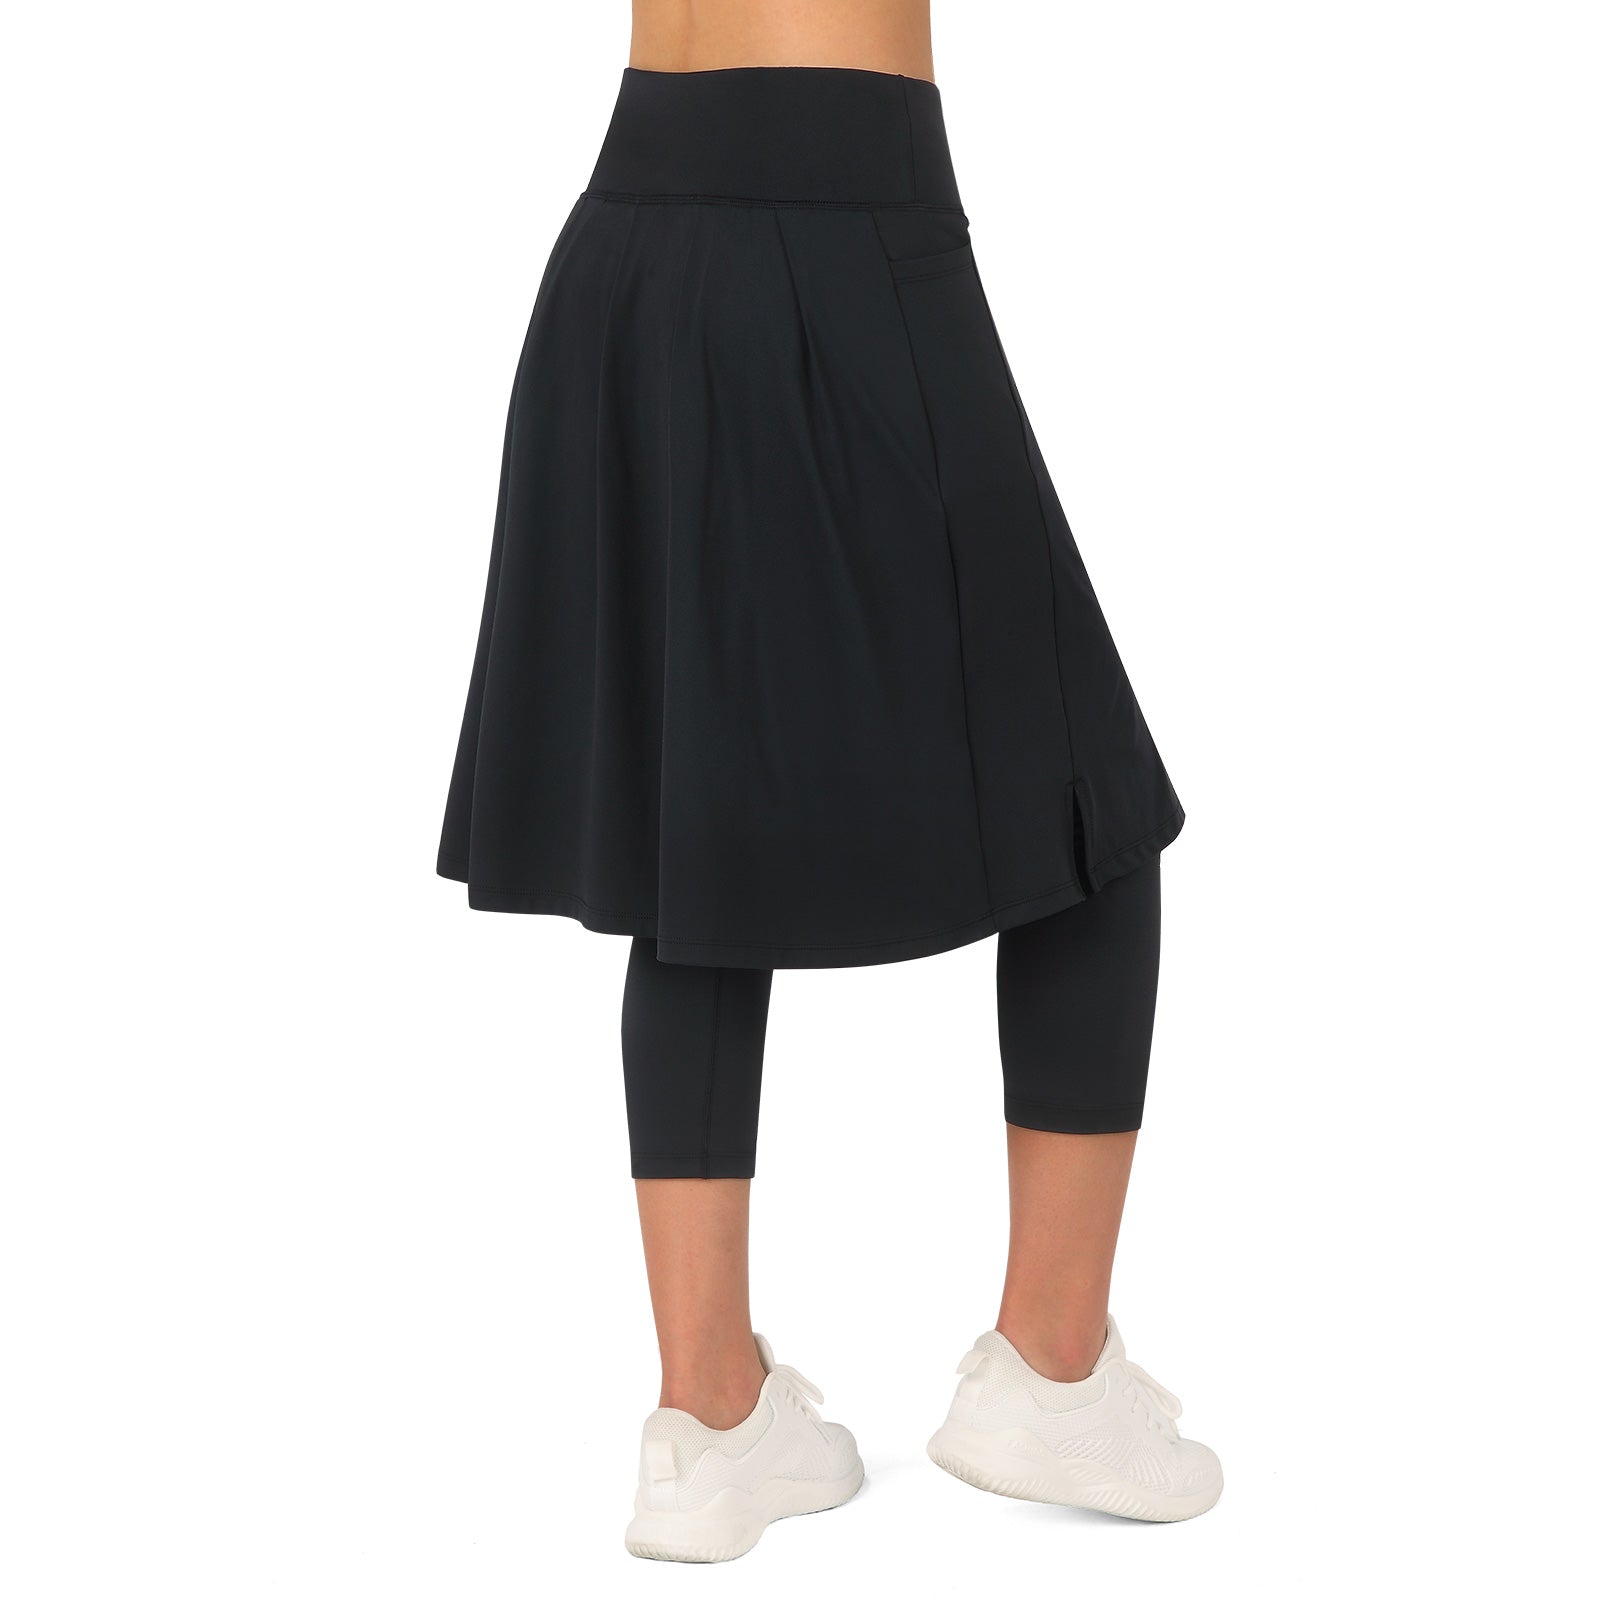 ANIVIVO Women Long Knee Length Skirt with Full Leggings,Skirted Leggings  with High Waisted Zipper Pockets(Black-Full Length,XL)